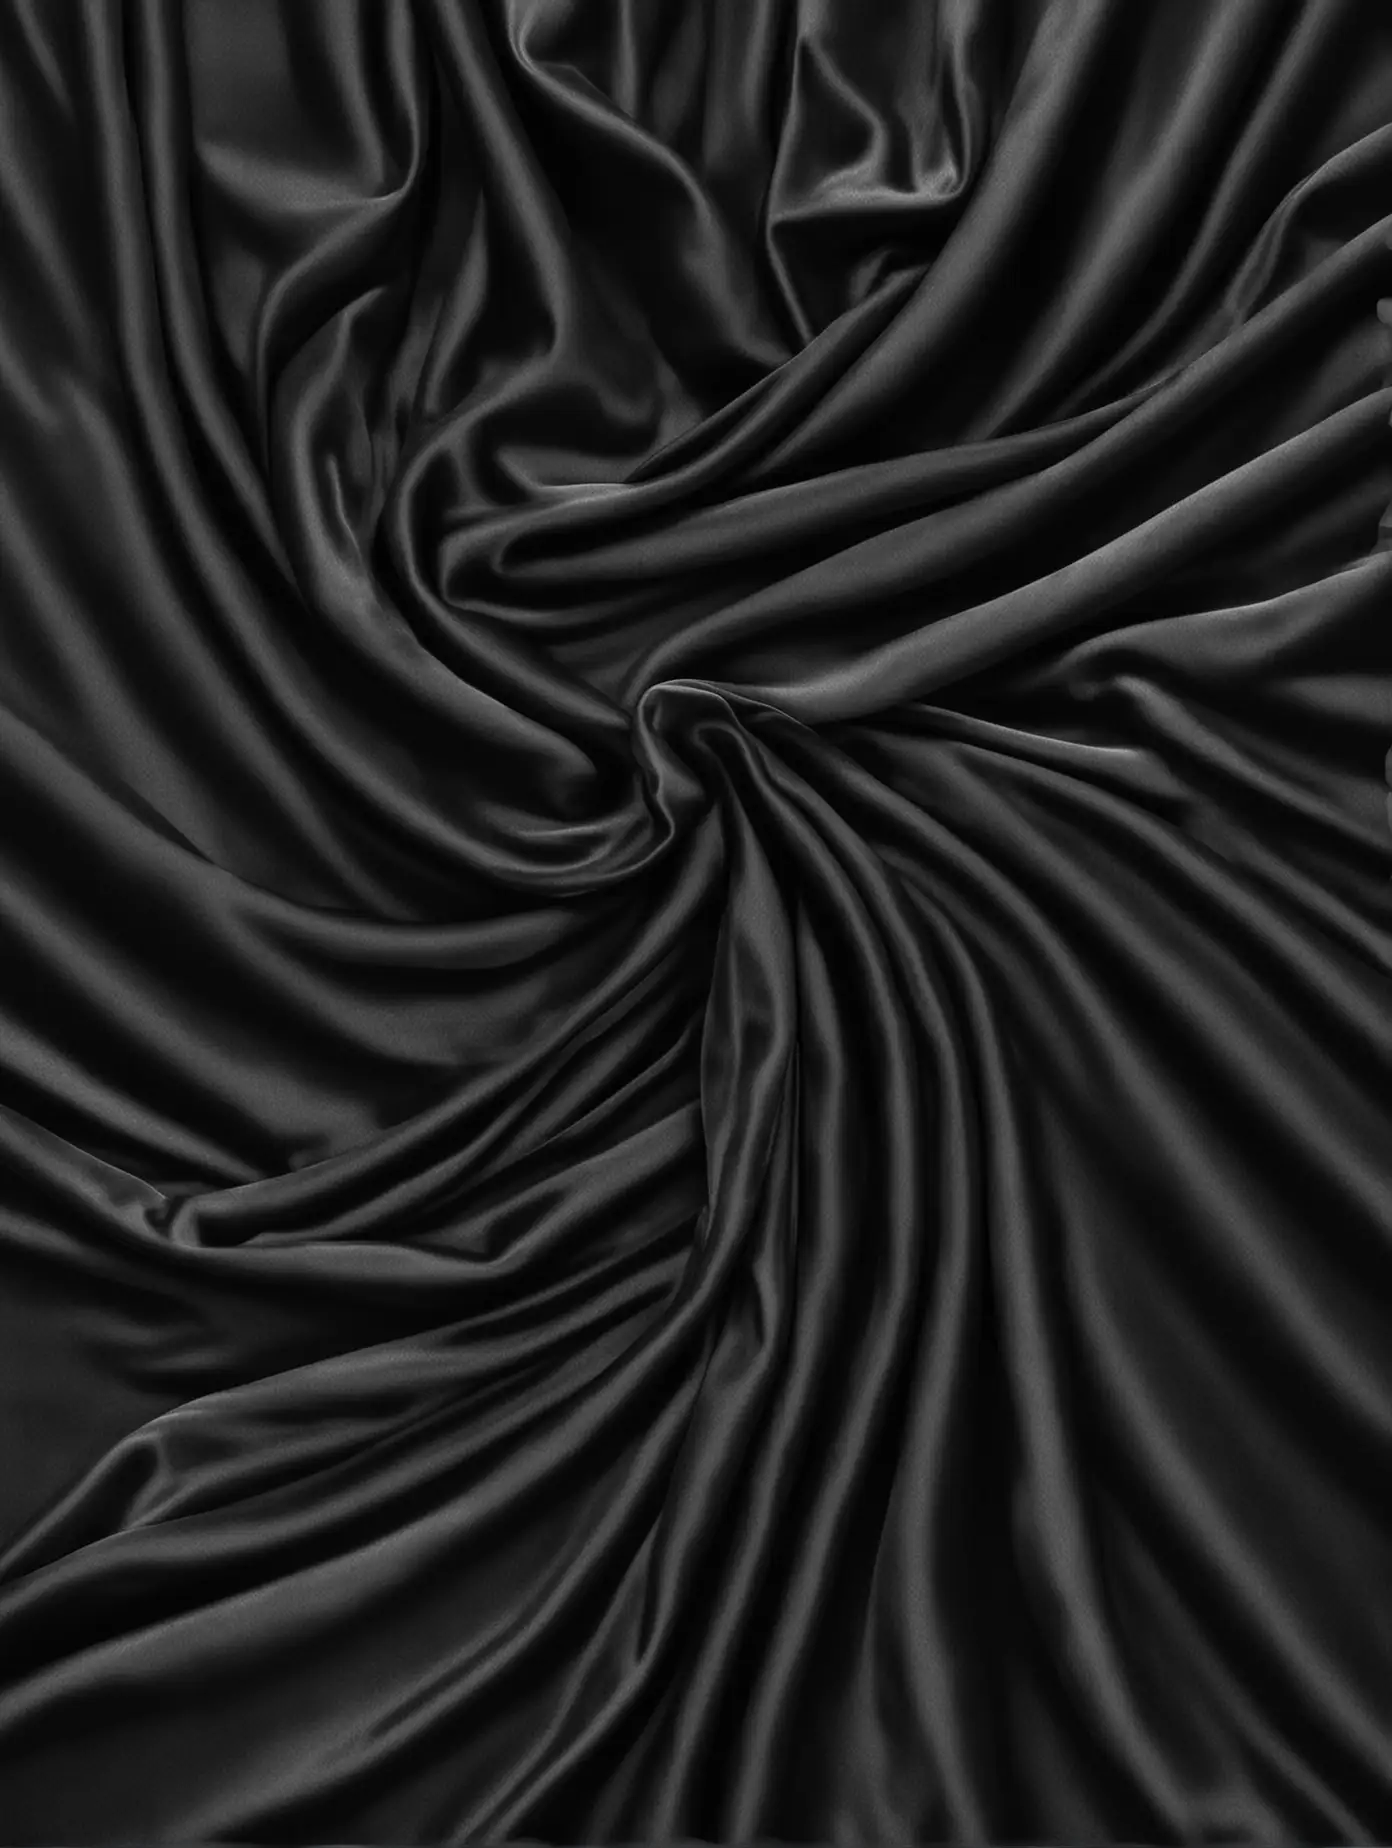 hyperrealistic black draped velvet fabric